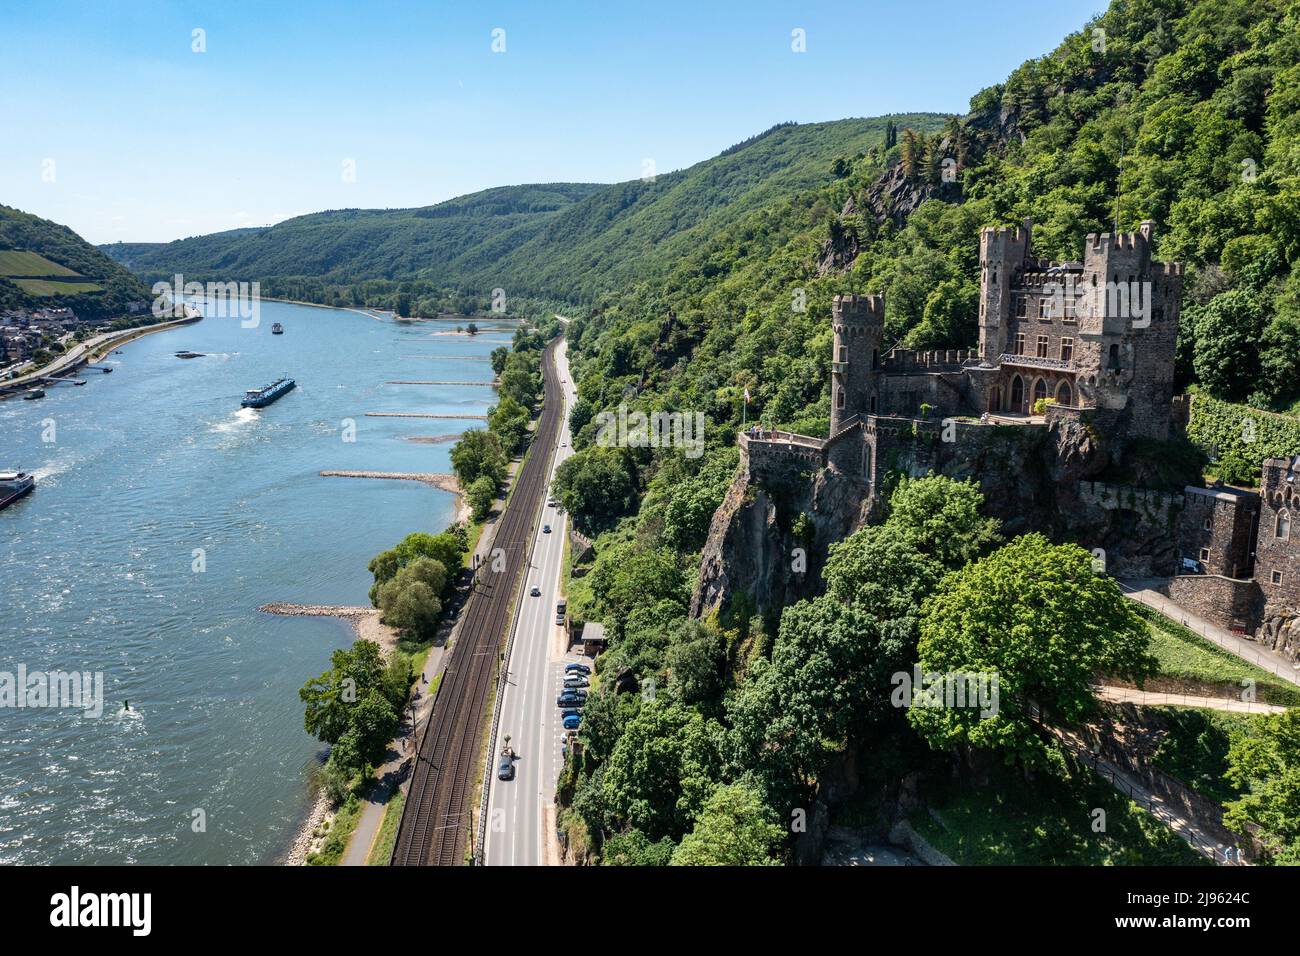 Rheinstein Castle, Romantik-Schloß Burg Rheinstein, Trechtingshausen, Rhine Valley, Germany Stock Photo